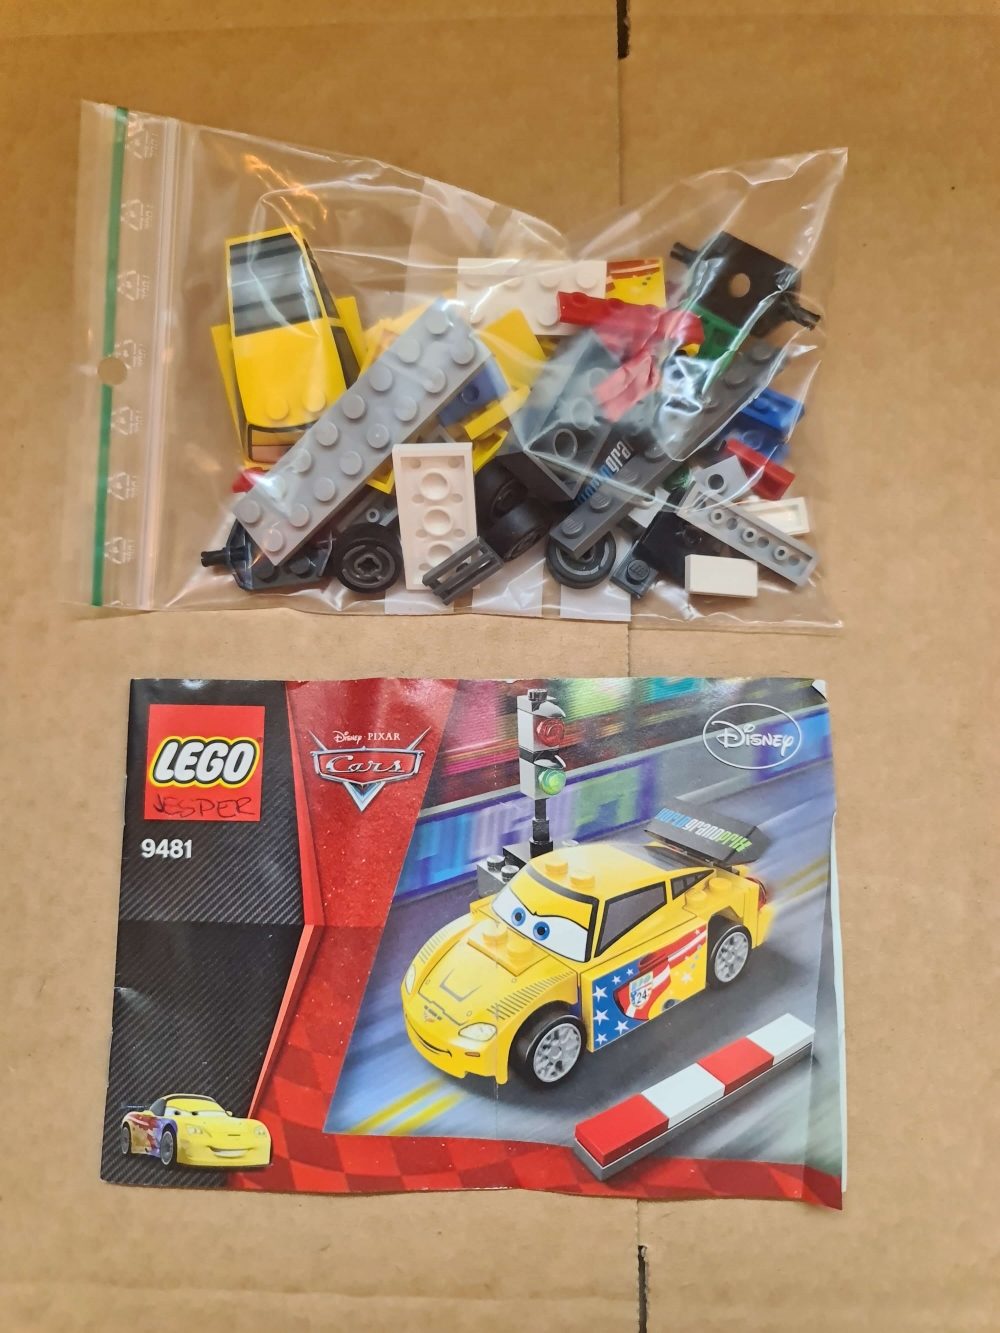 Sett 9481 fra Lego Cars : Cars 2 serien.
Meget pent.
Komplett med manual.